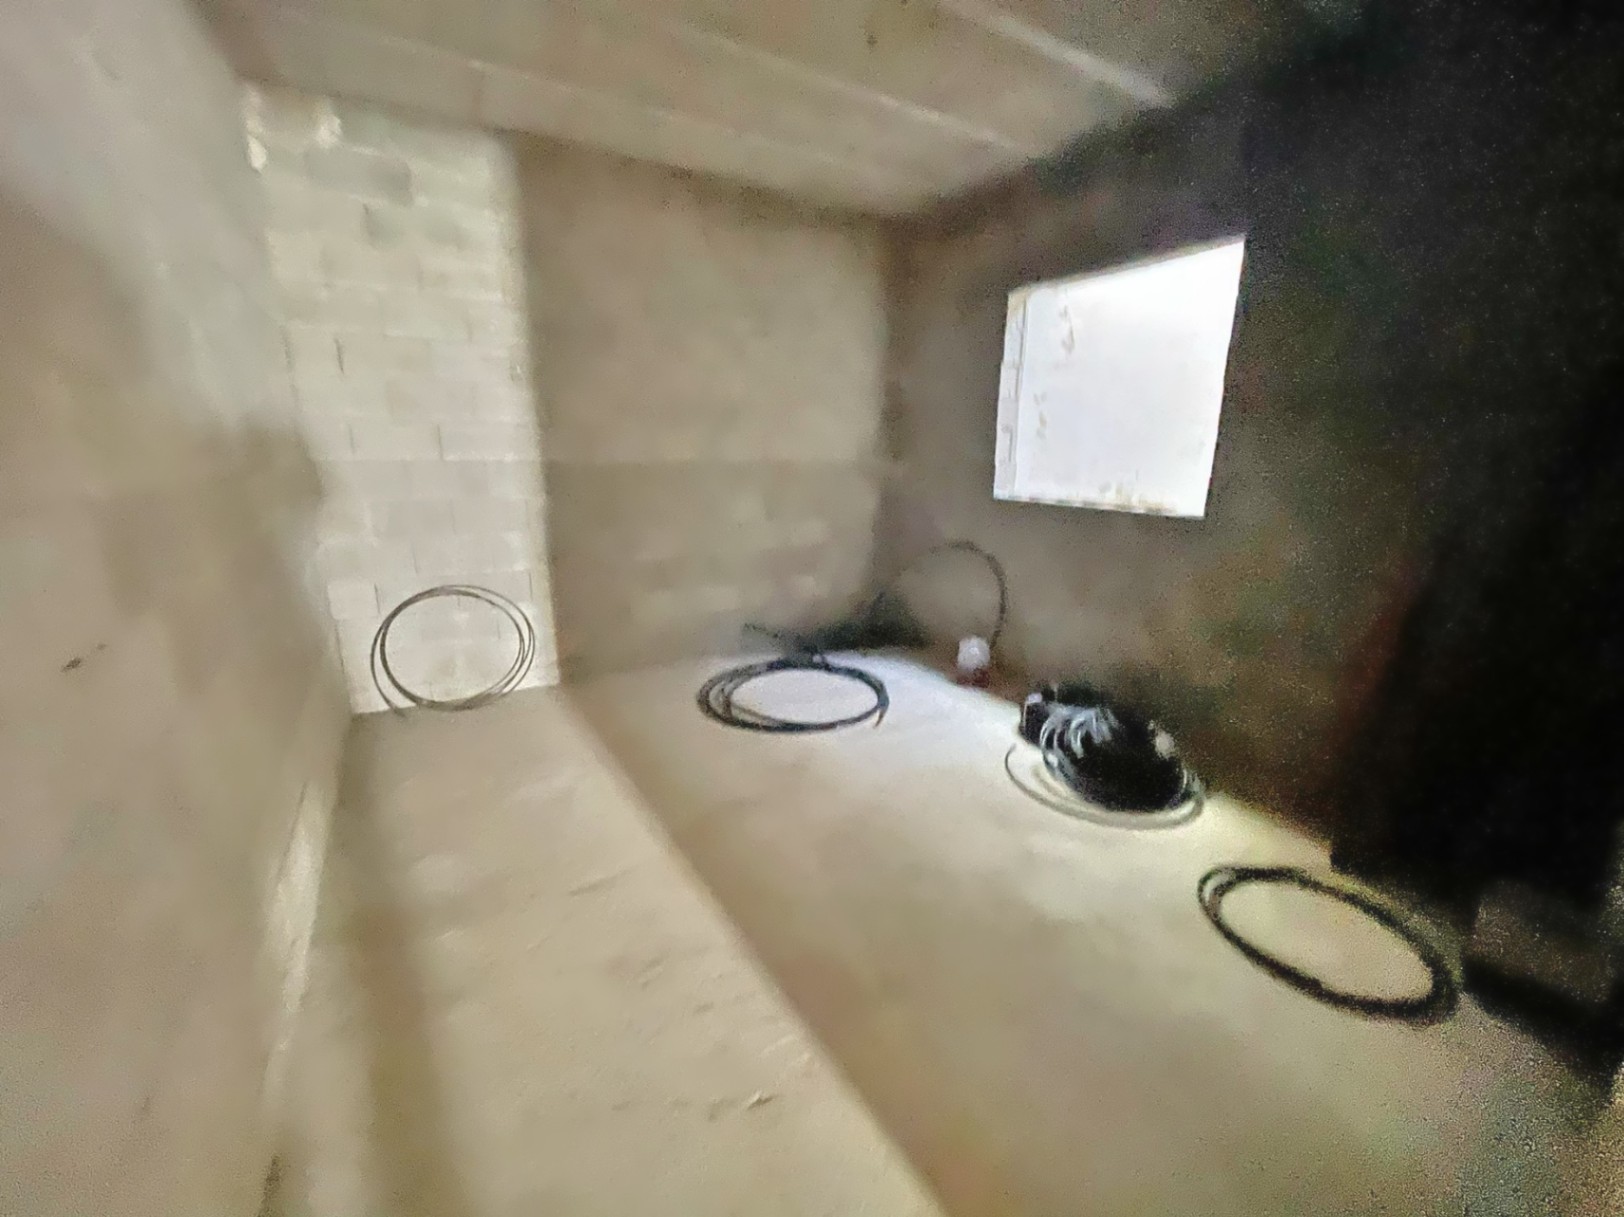 Vila de 3 dormitoris amb vistes panoràmiques a la venda a Xàbia